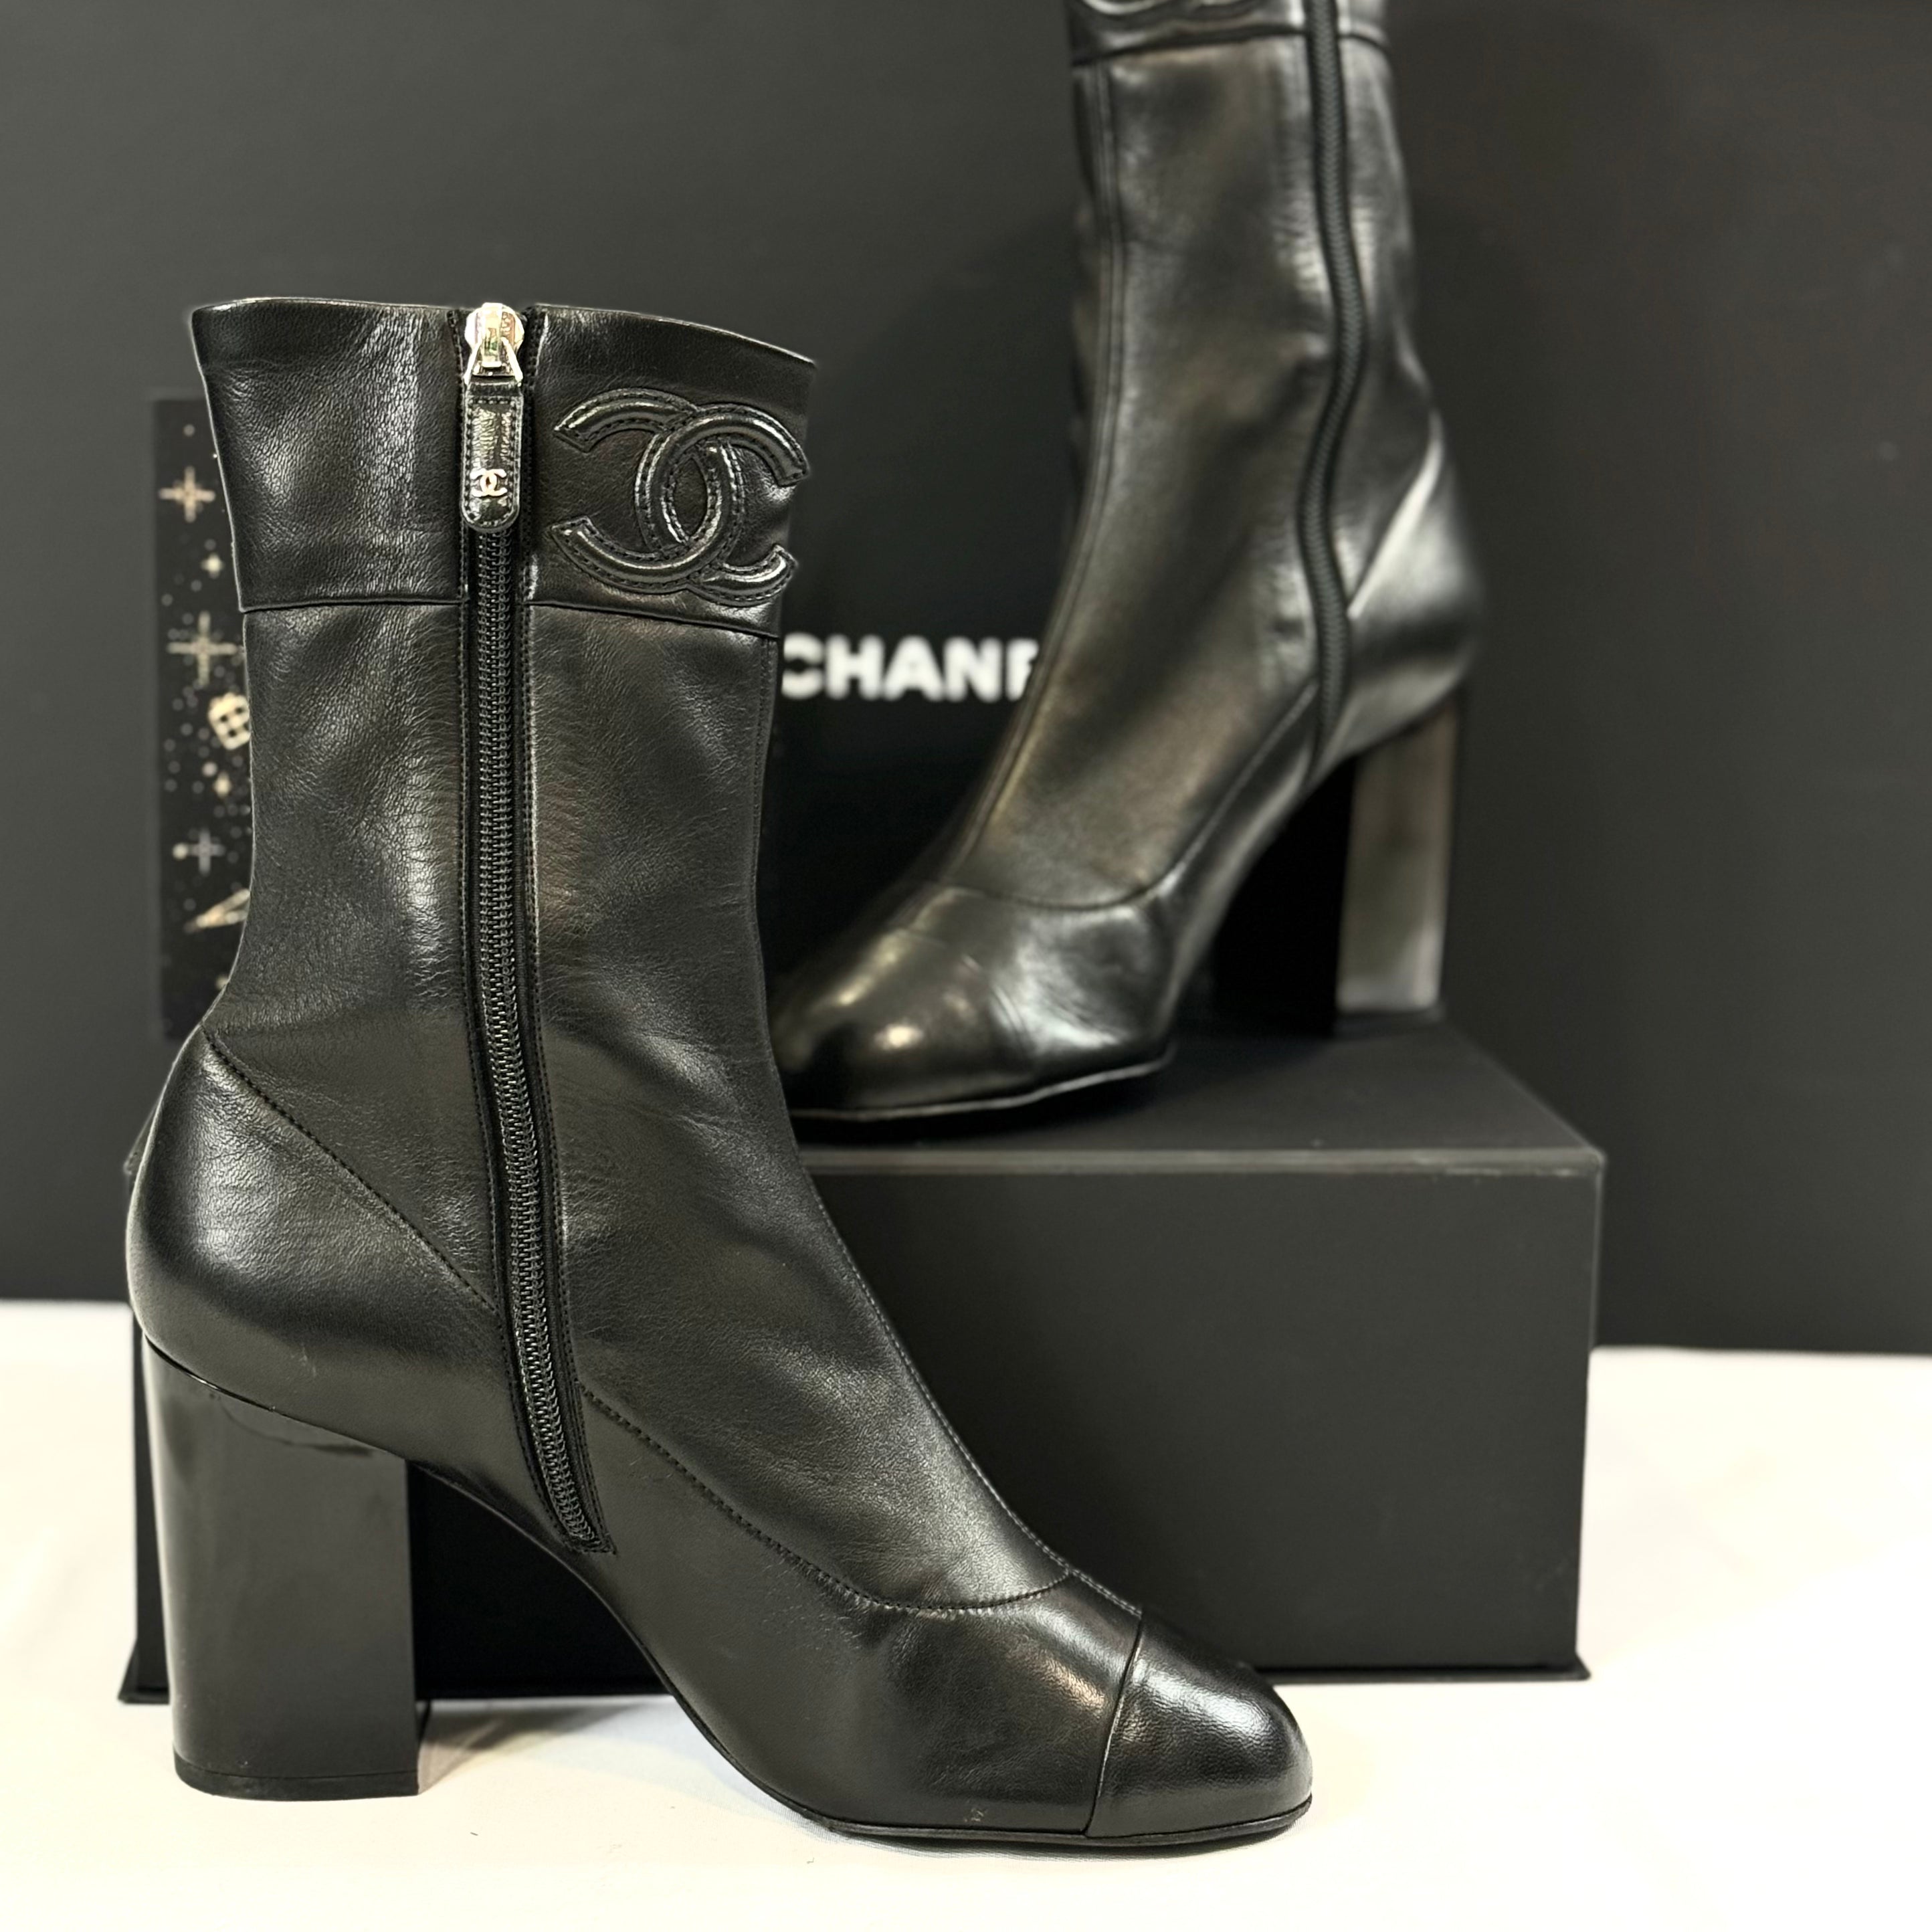 Chanel - 踝靴T.40 - Chanel - – Les Folies d'Eugenie